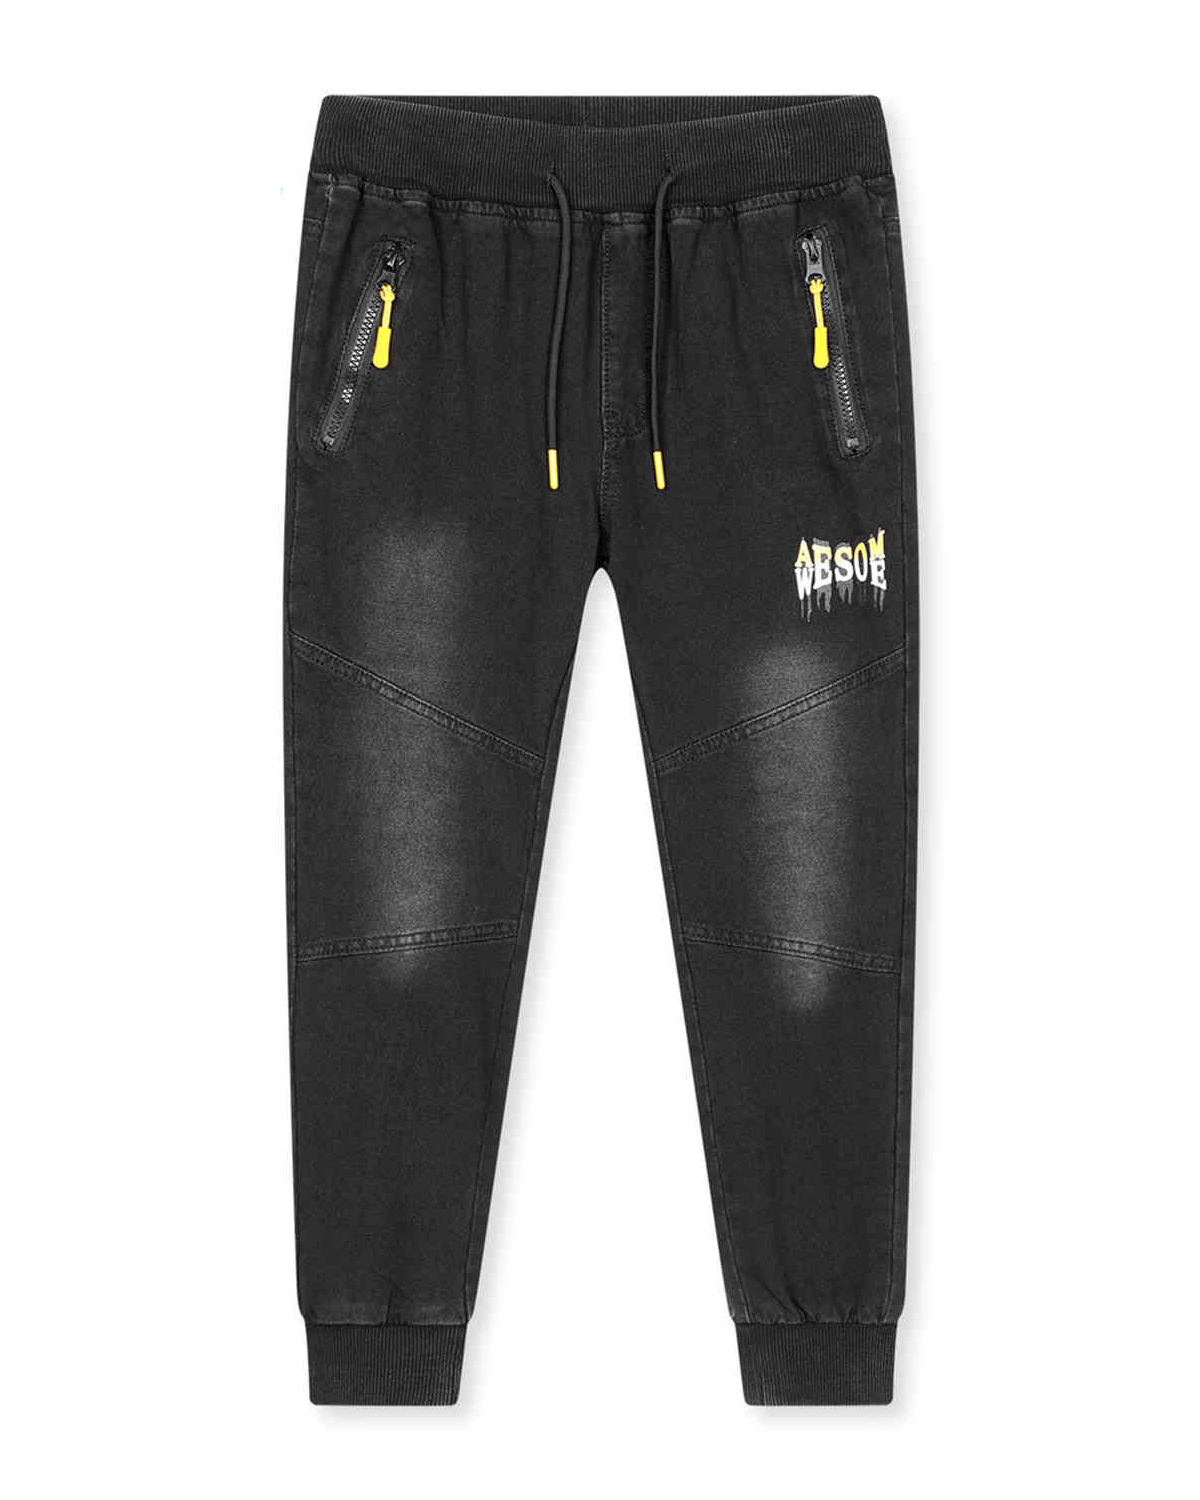 Chlapecké riflové kalhoty / tepláky - KUGO CK0928, černá / žlutá aplikace Barva: Černá, Velikost: 146